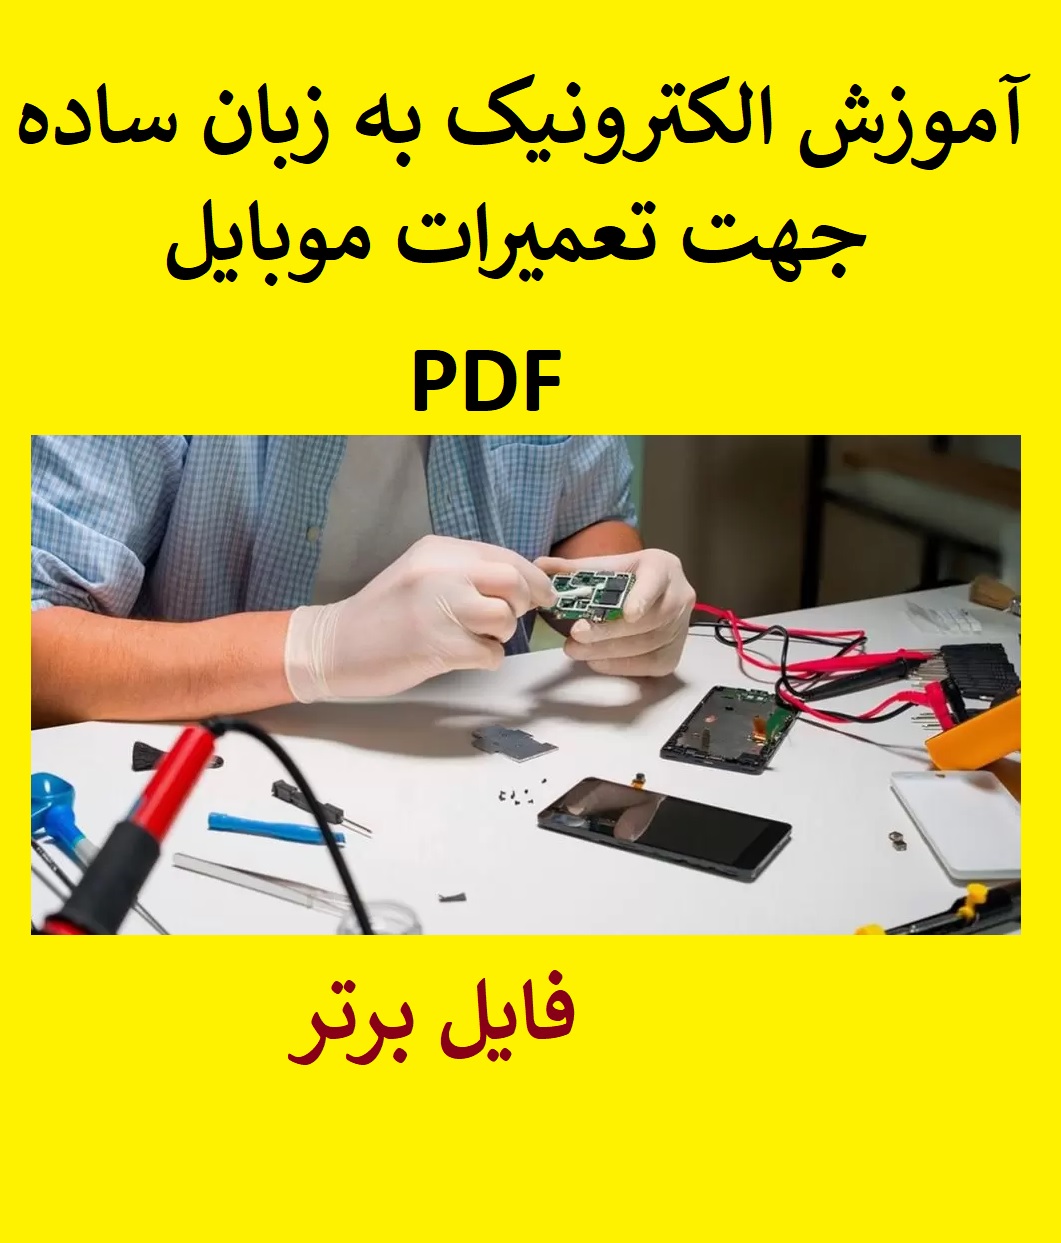 آموزش الکترونیک به زبان ساده جهت تعمیرات موبایل PDF